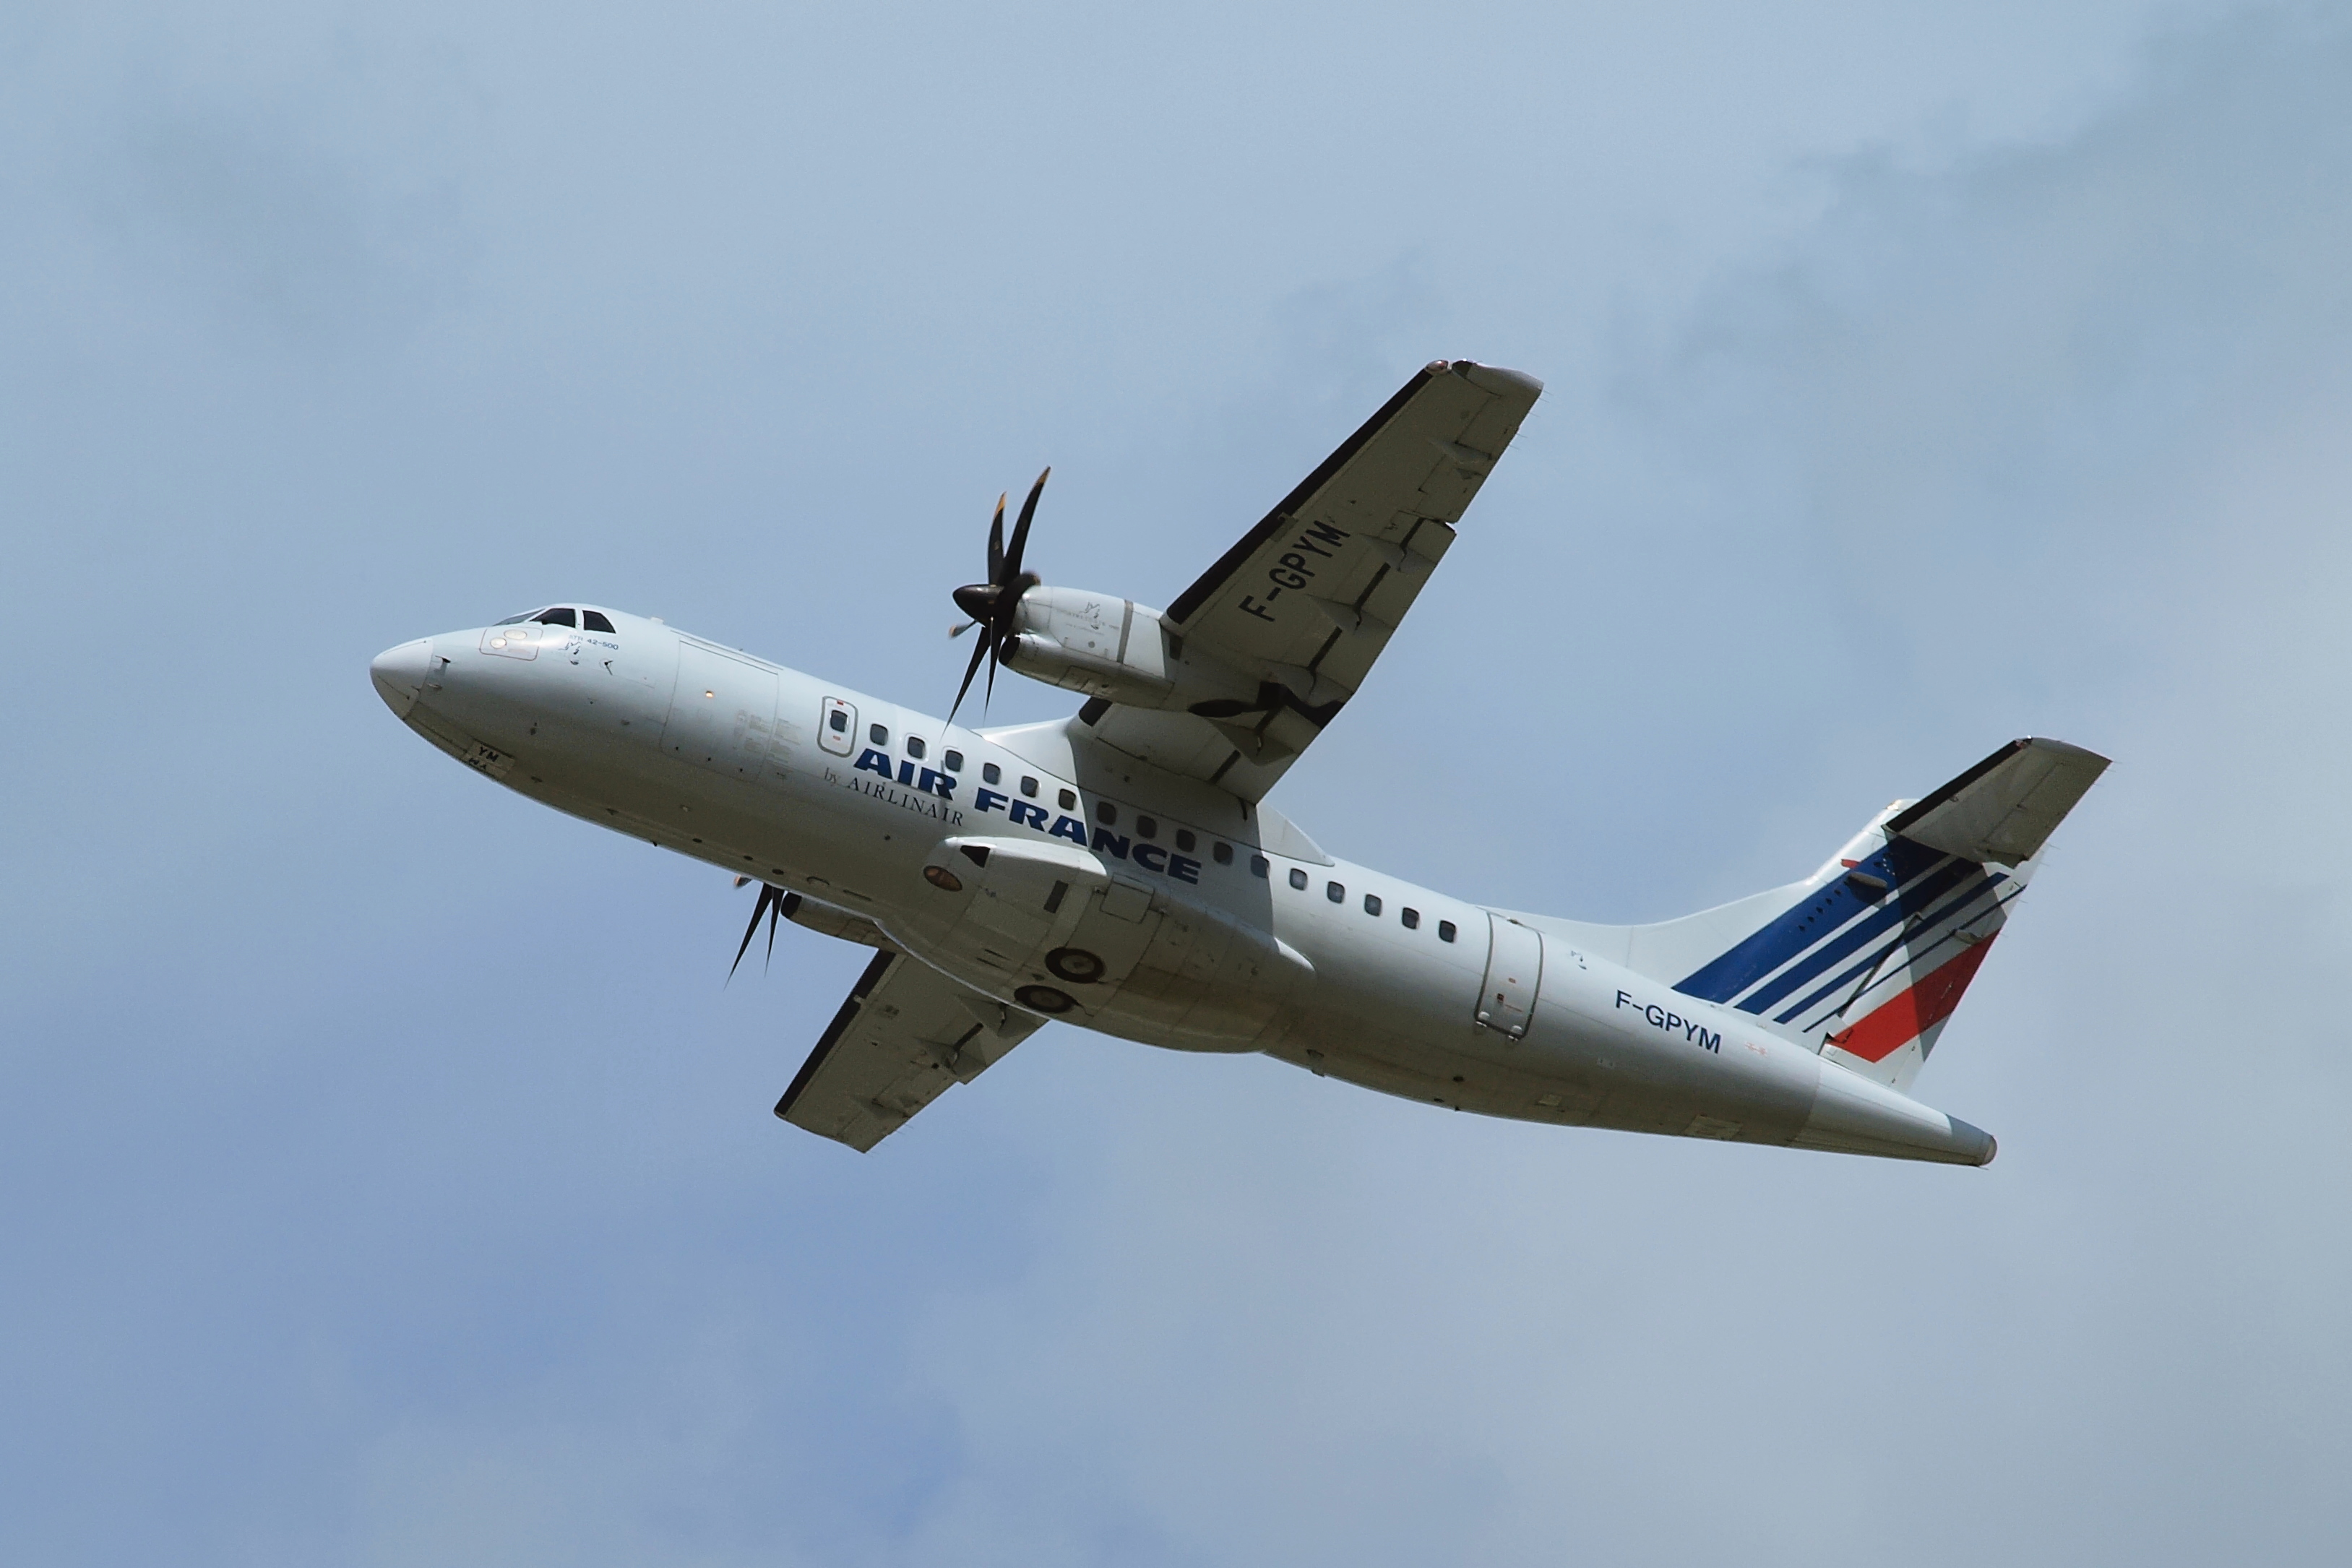 ATR 42-500 F-GPYM